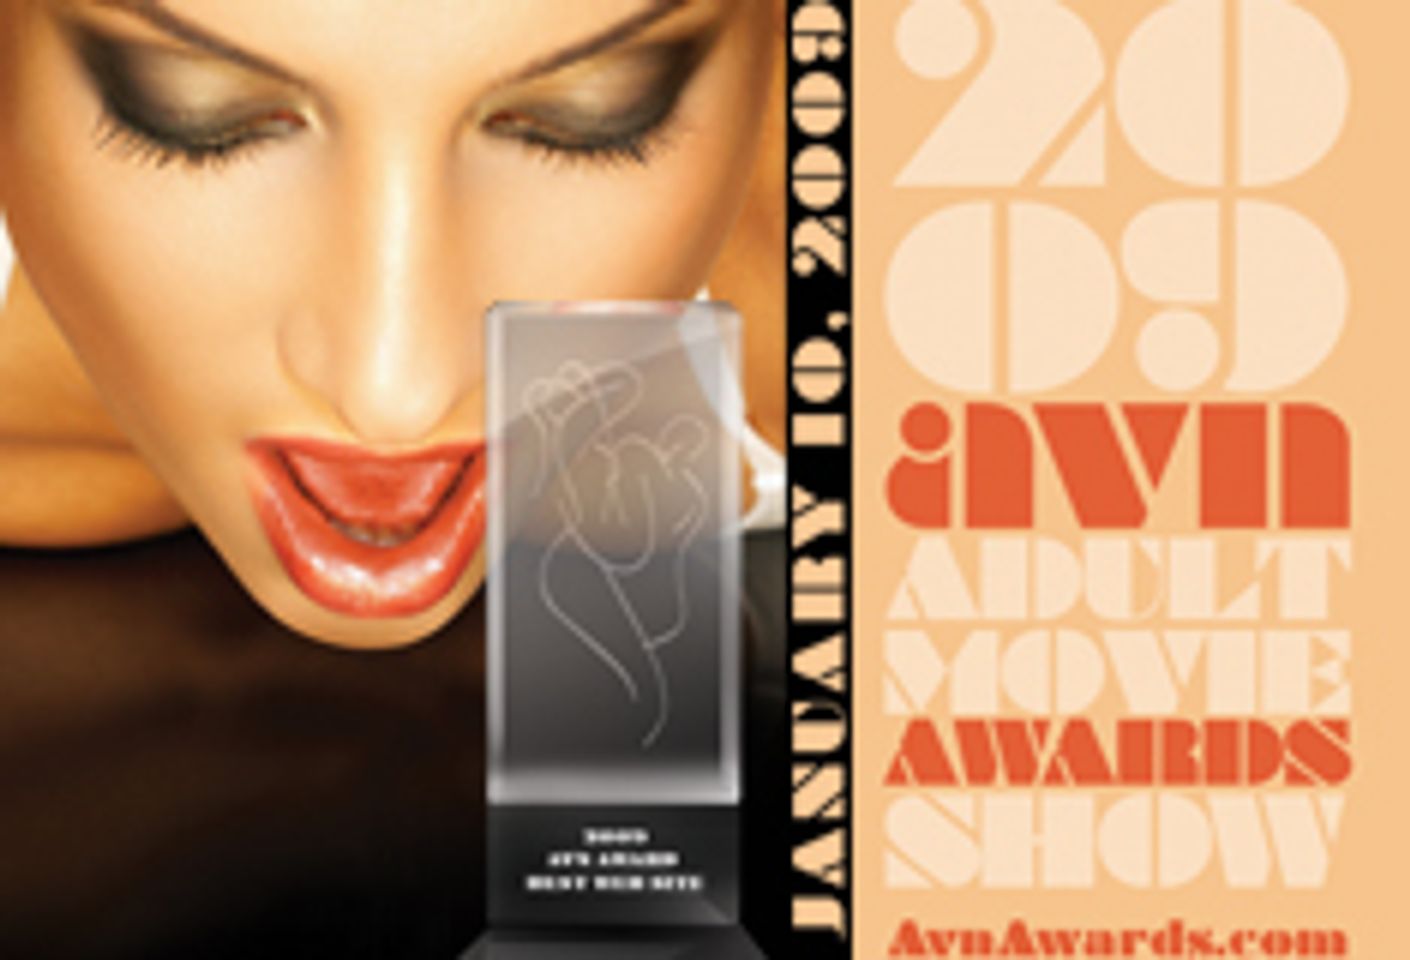 Web Categories Announced for AVN Awards